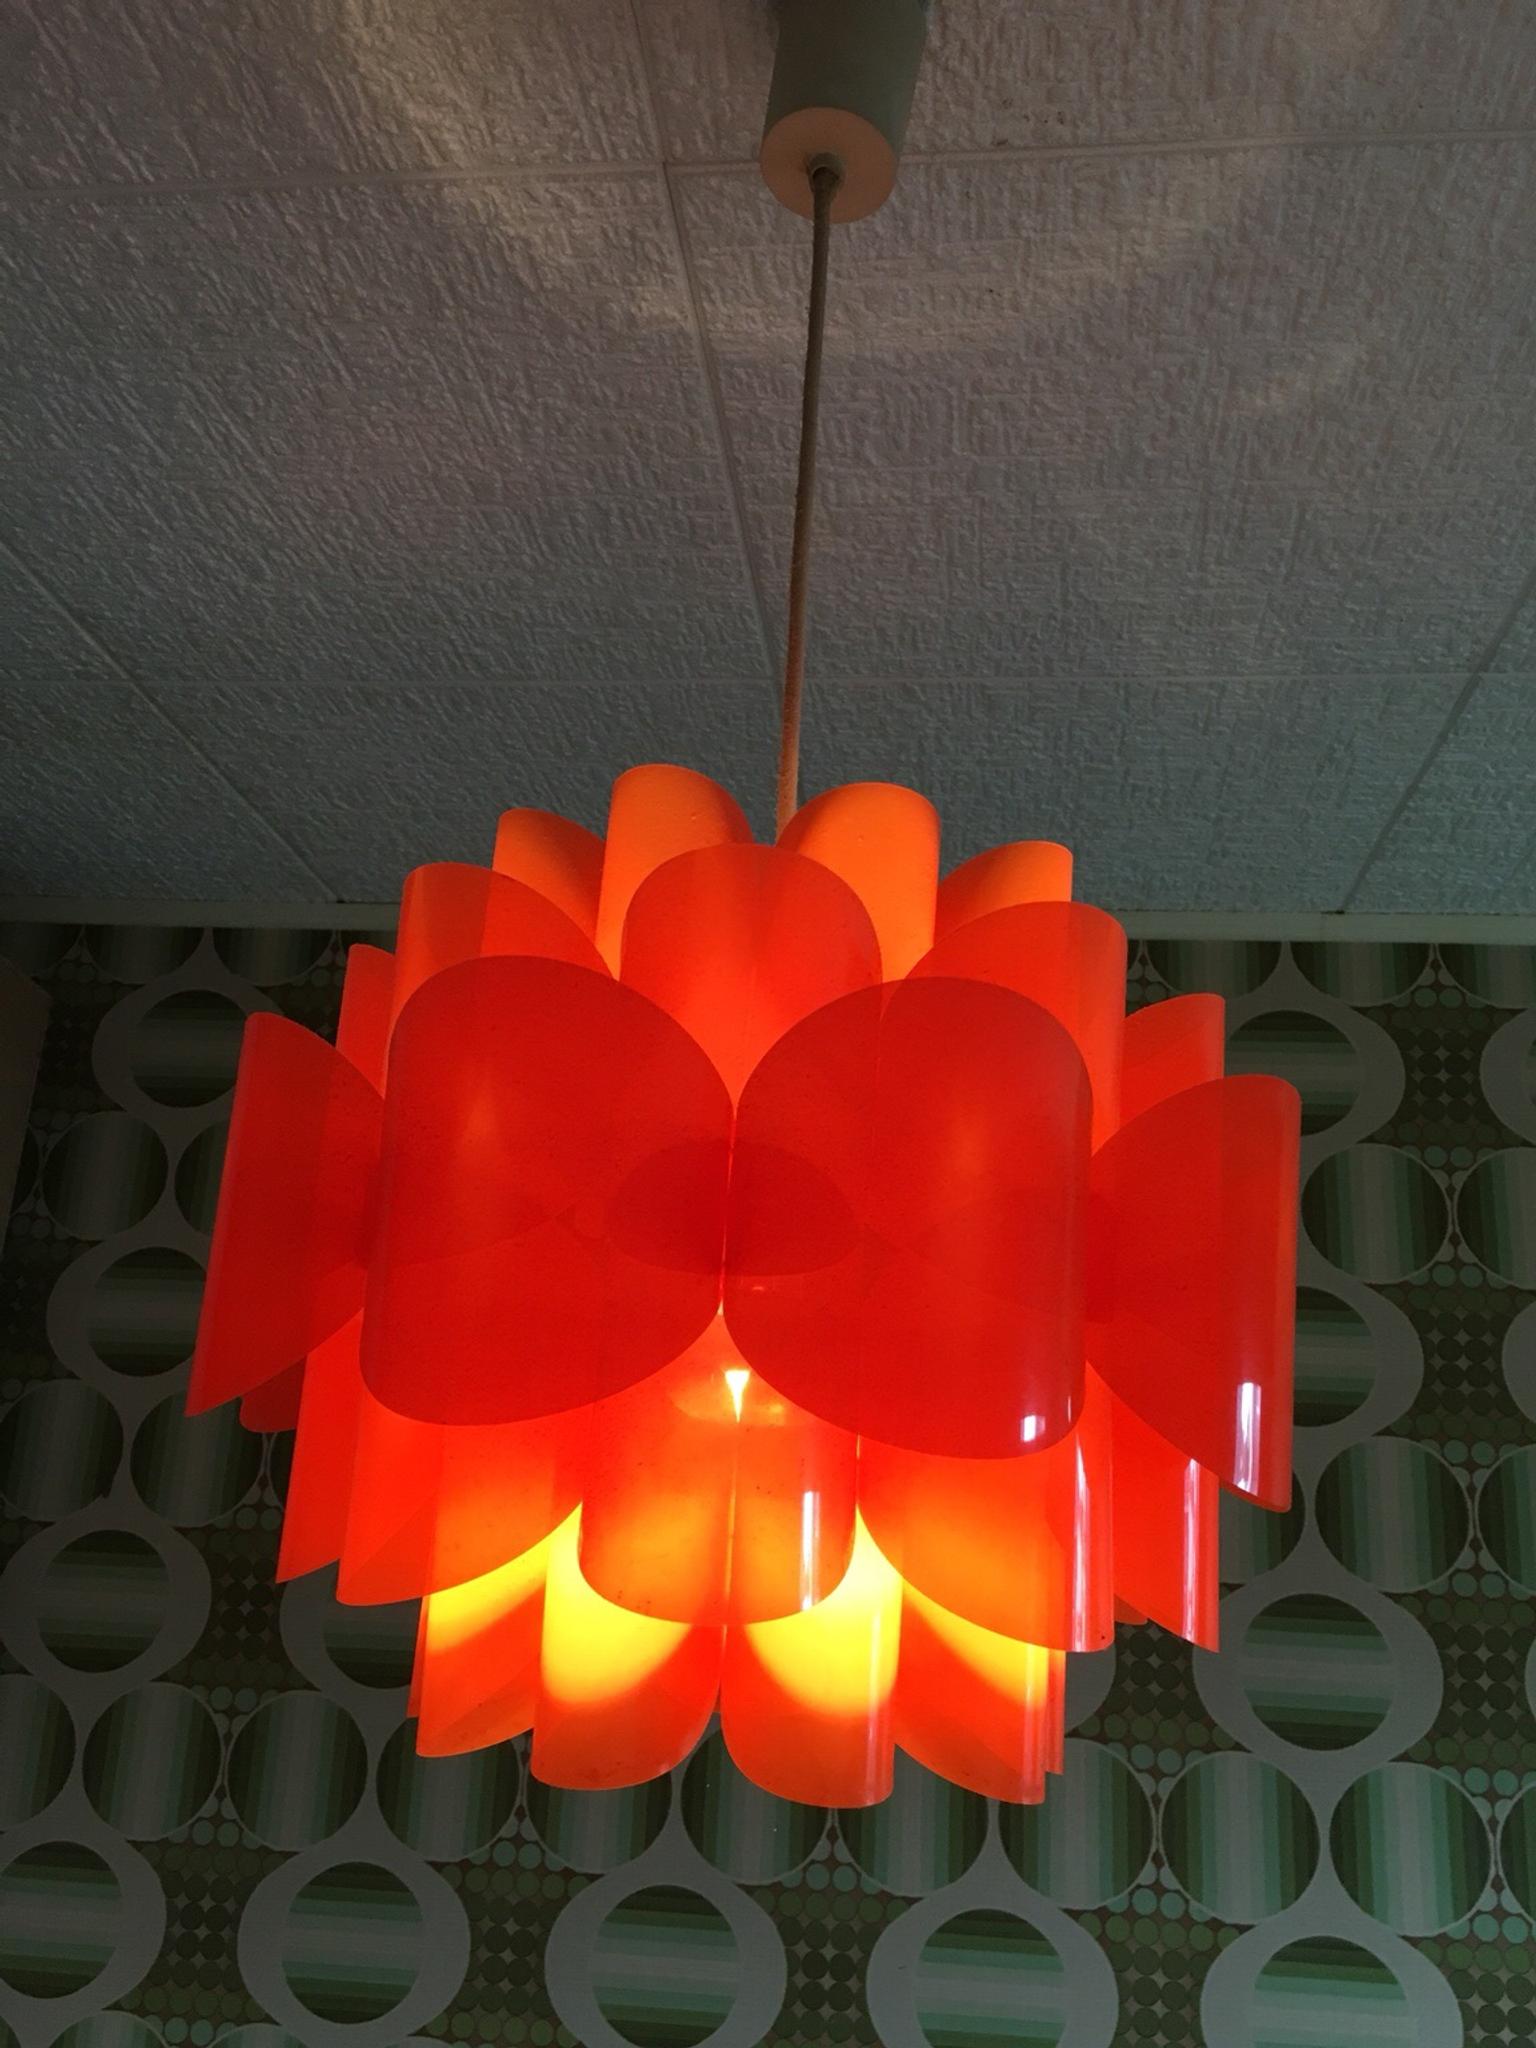 Original 70er Lampe Orange Schummriges Licht In 50737 Koln For 45 00 For Sale Shpock